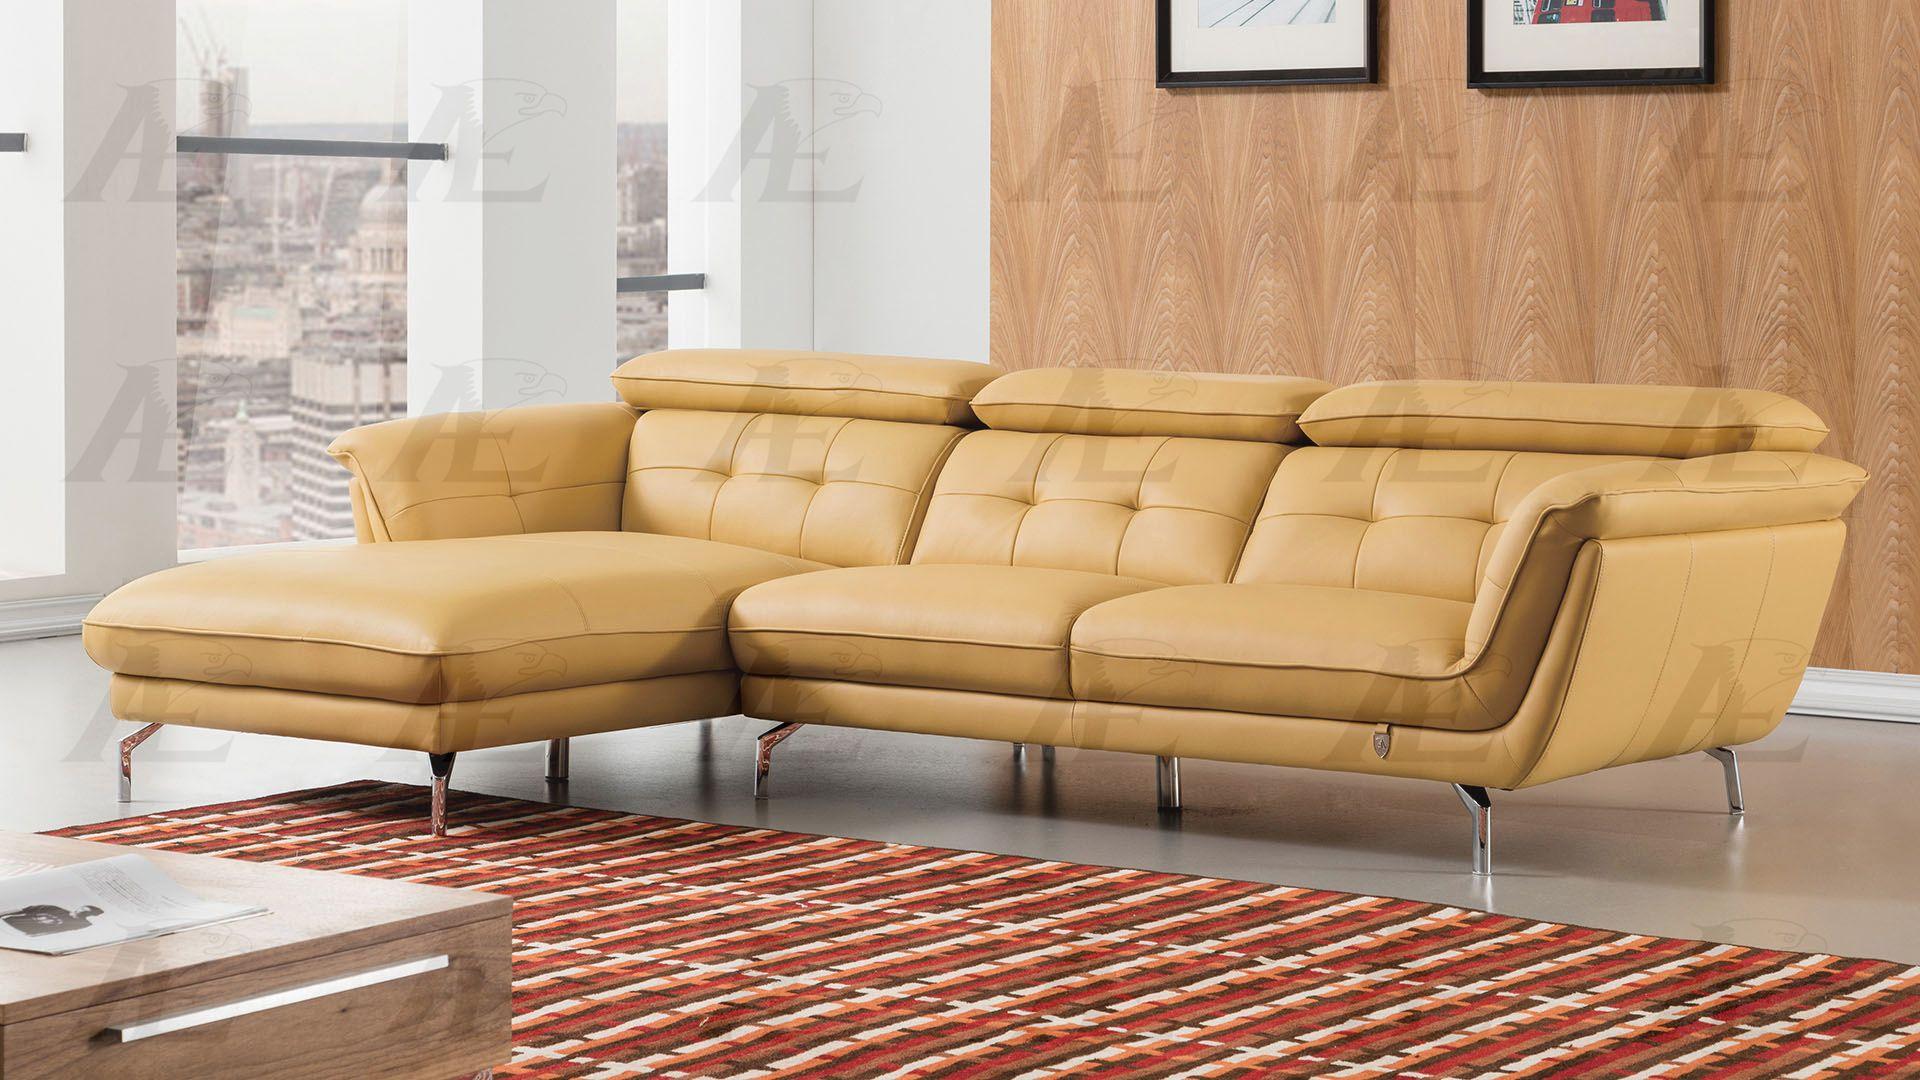 

    
American Eagle Furniture EK-L083-YO Sectional Sofa Yellow EK-L083-YO
